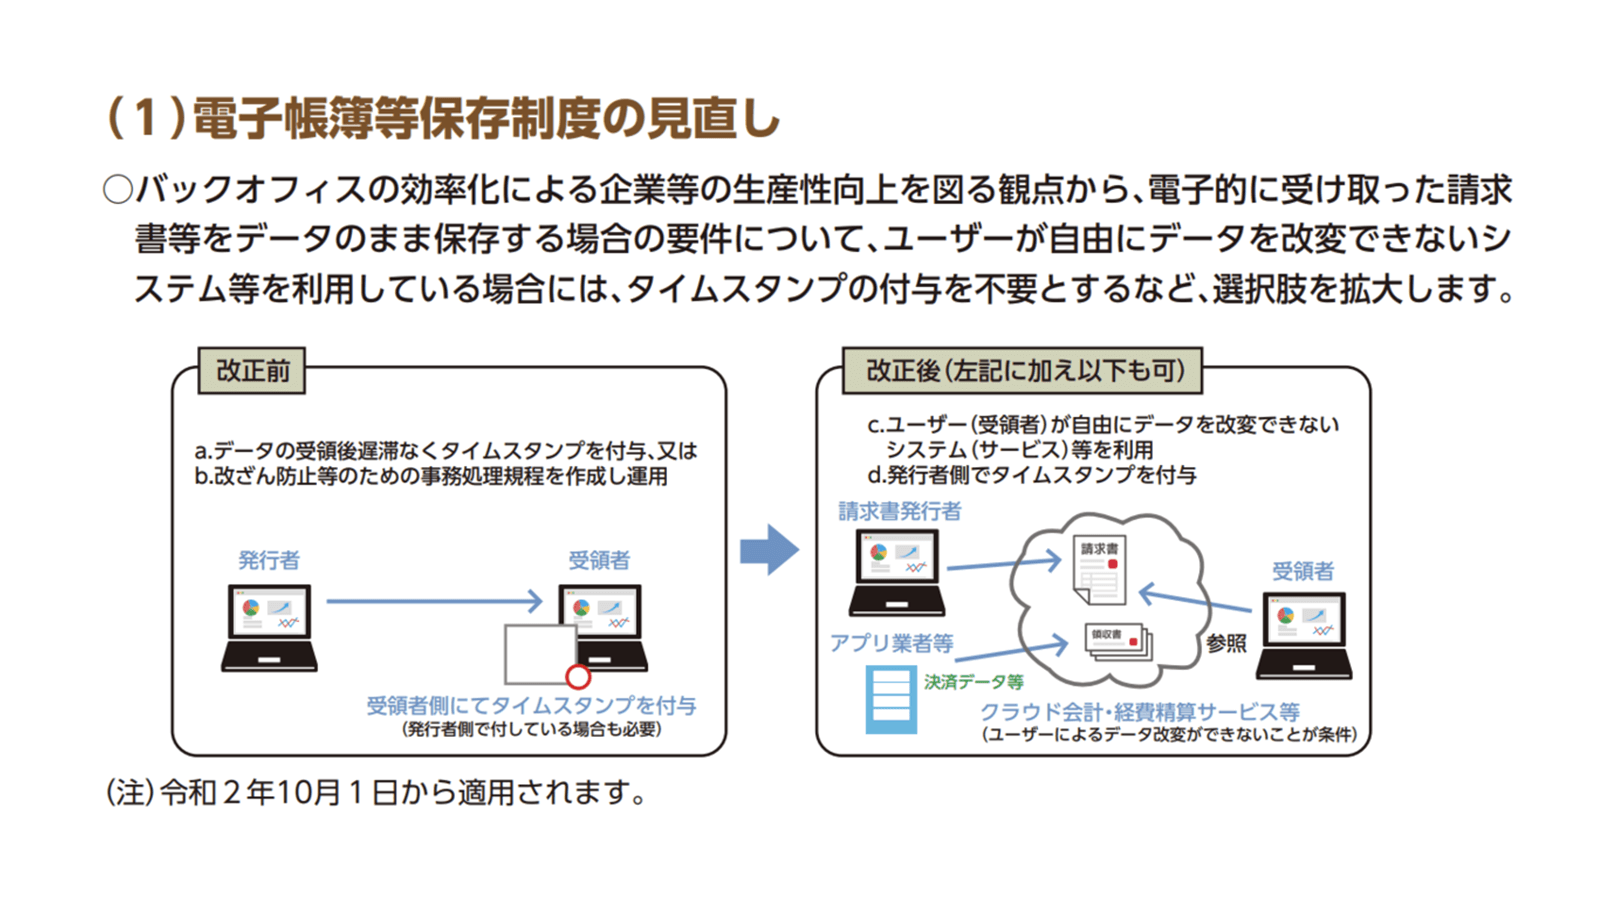 https://www.mof.go.jp/tax_policy/publication/brochure/zeisei20_pdf/zeisei20_05.pdf 2020年11月27日最終アクセス